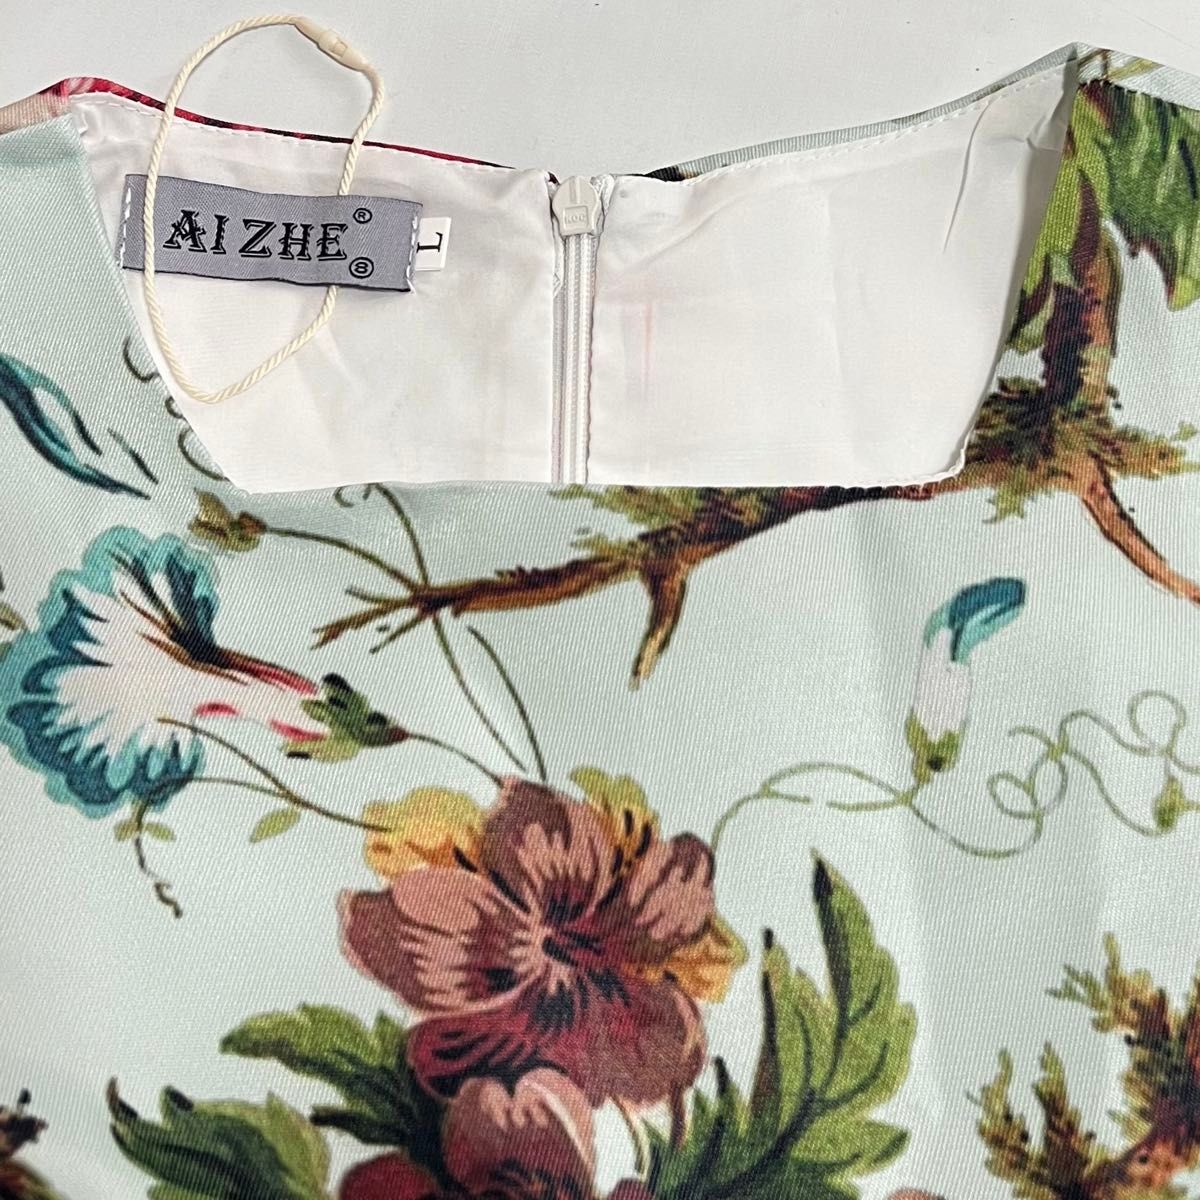 【新品未使用】AIZHE 高級感 ワンピース ロングワンピース 花柄 フローラルプリント パーティードレス 大きいサイズ L